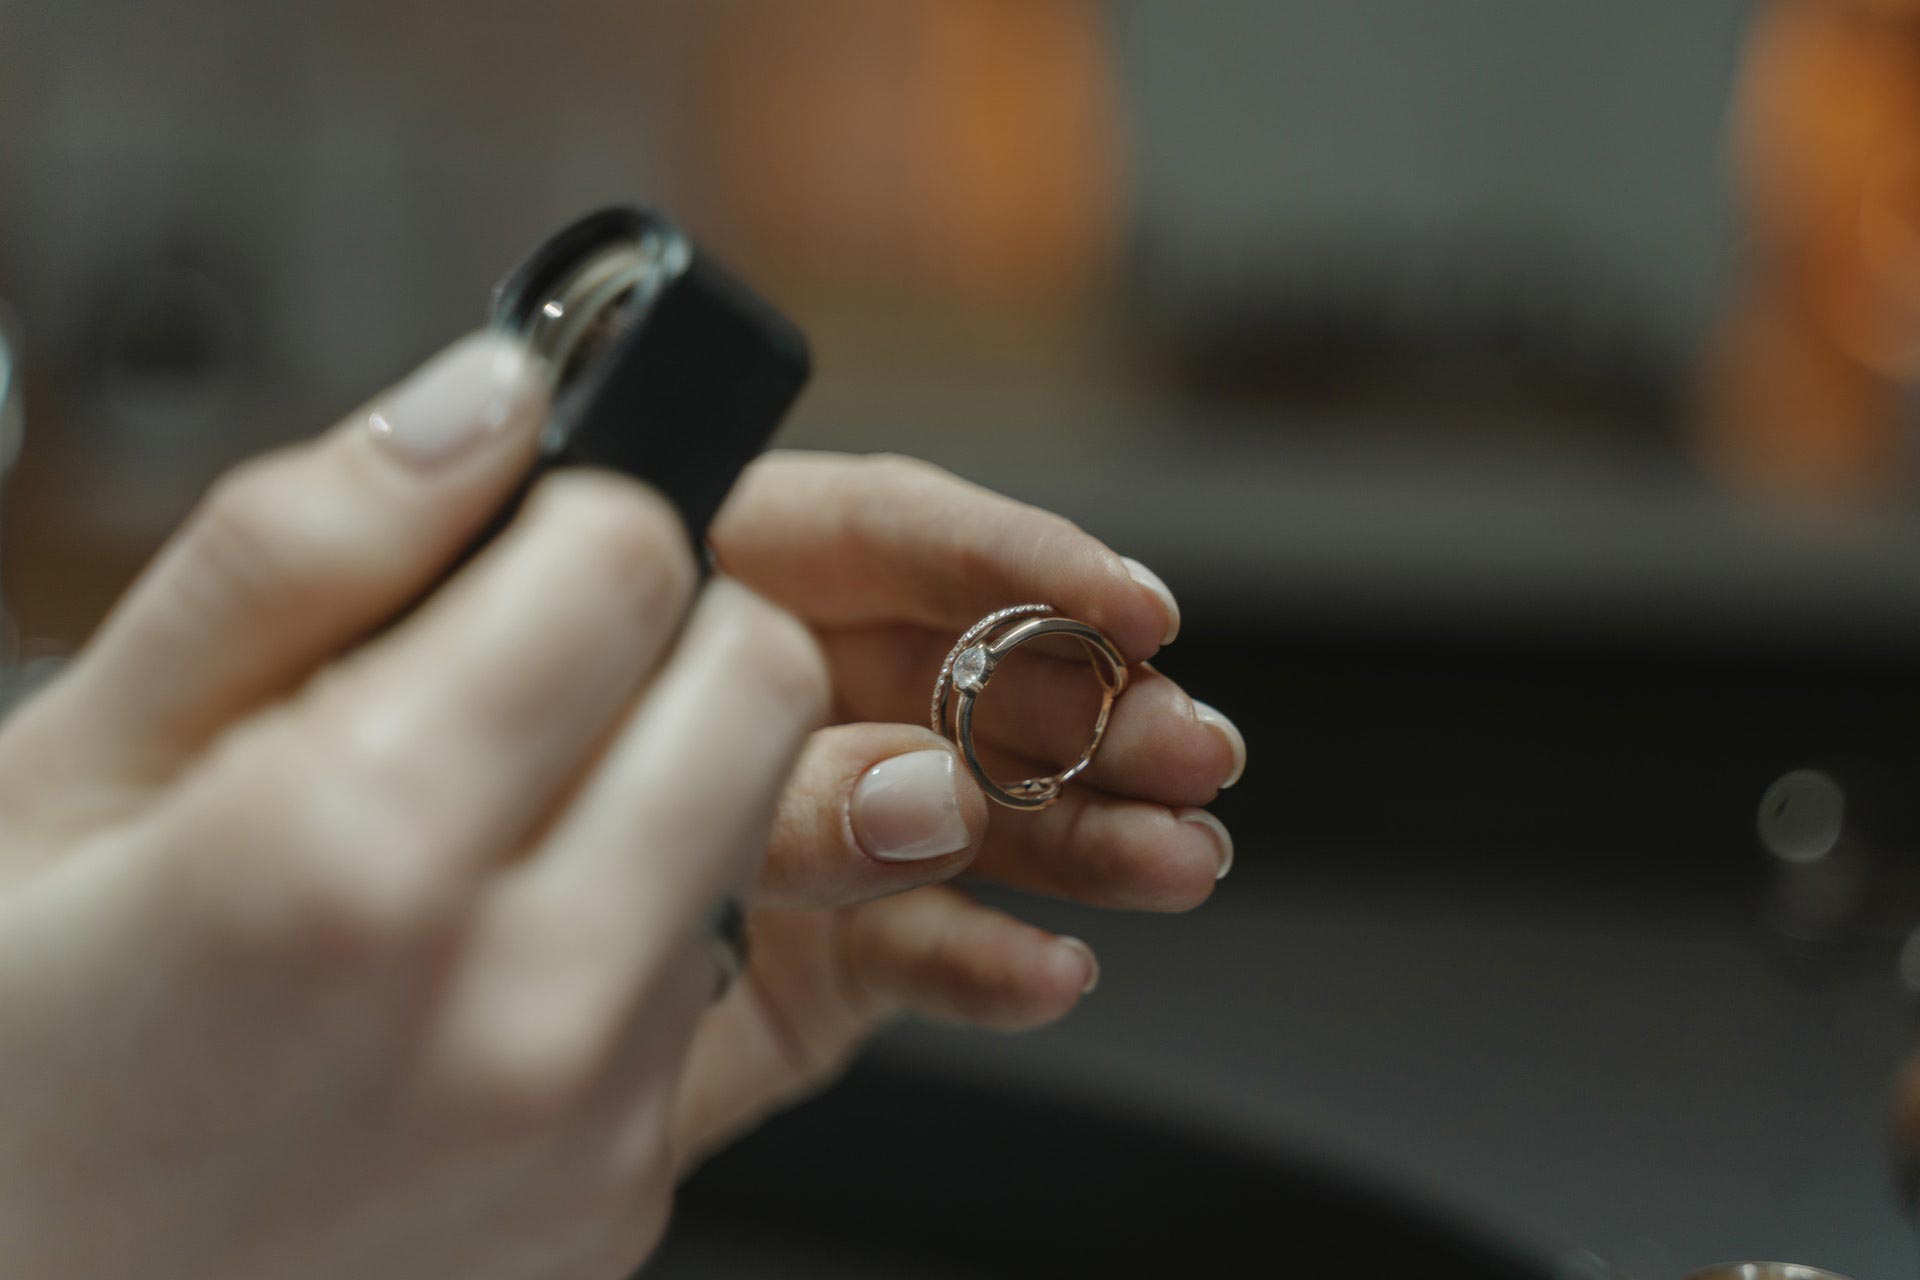 Esperta del Compro Oro terni che valuta un anello d'oro bianco usato